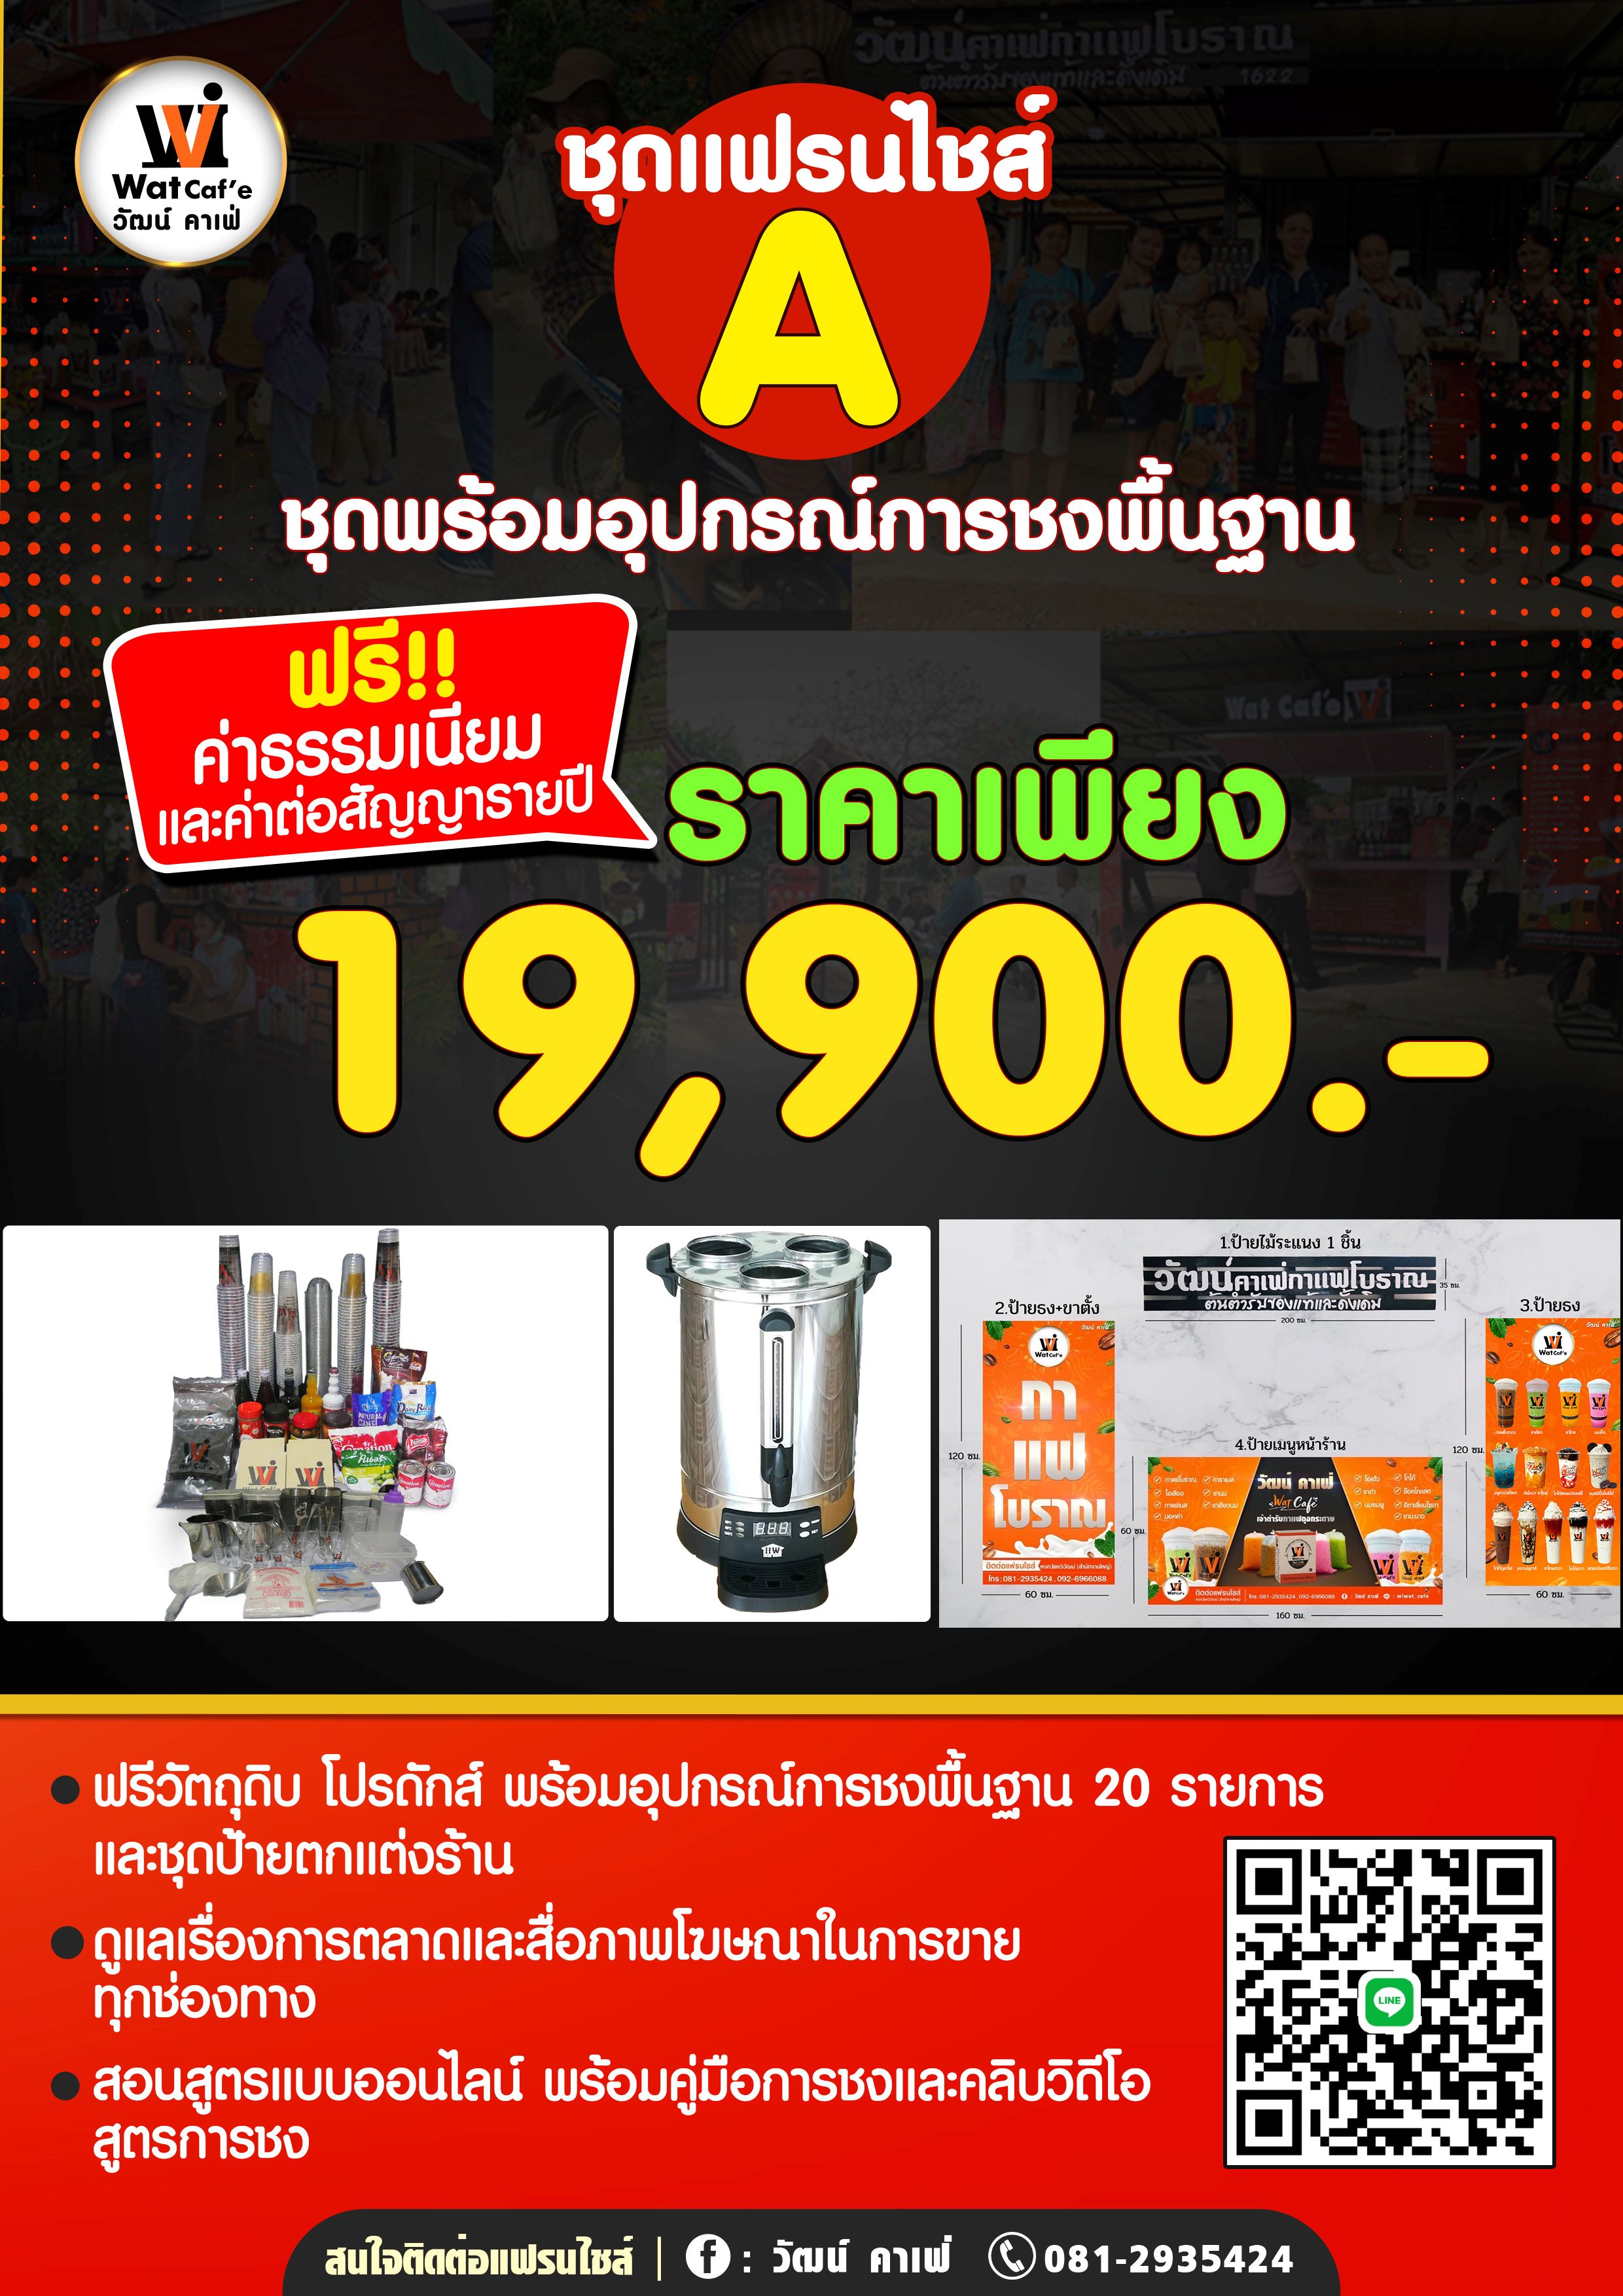 04 Thai Traditional Coffee